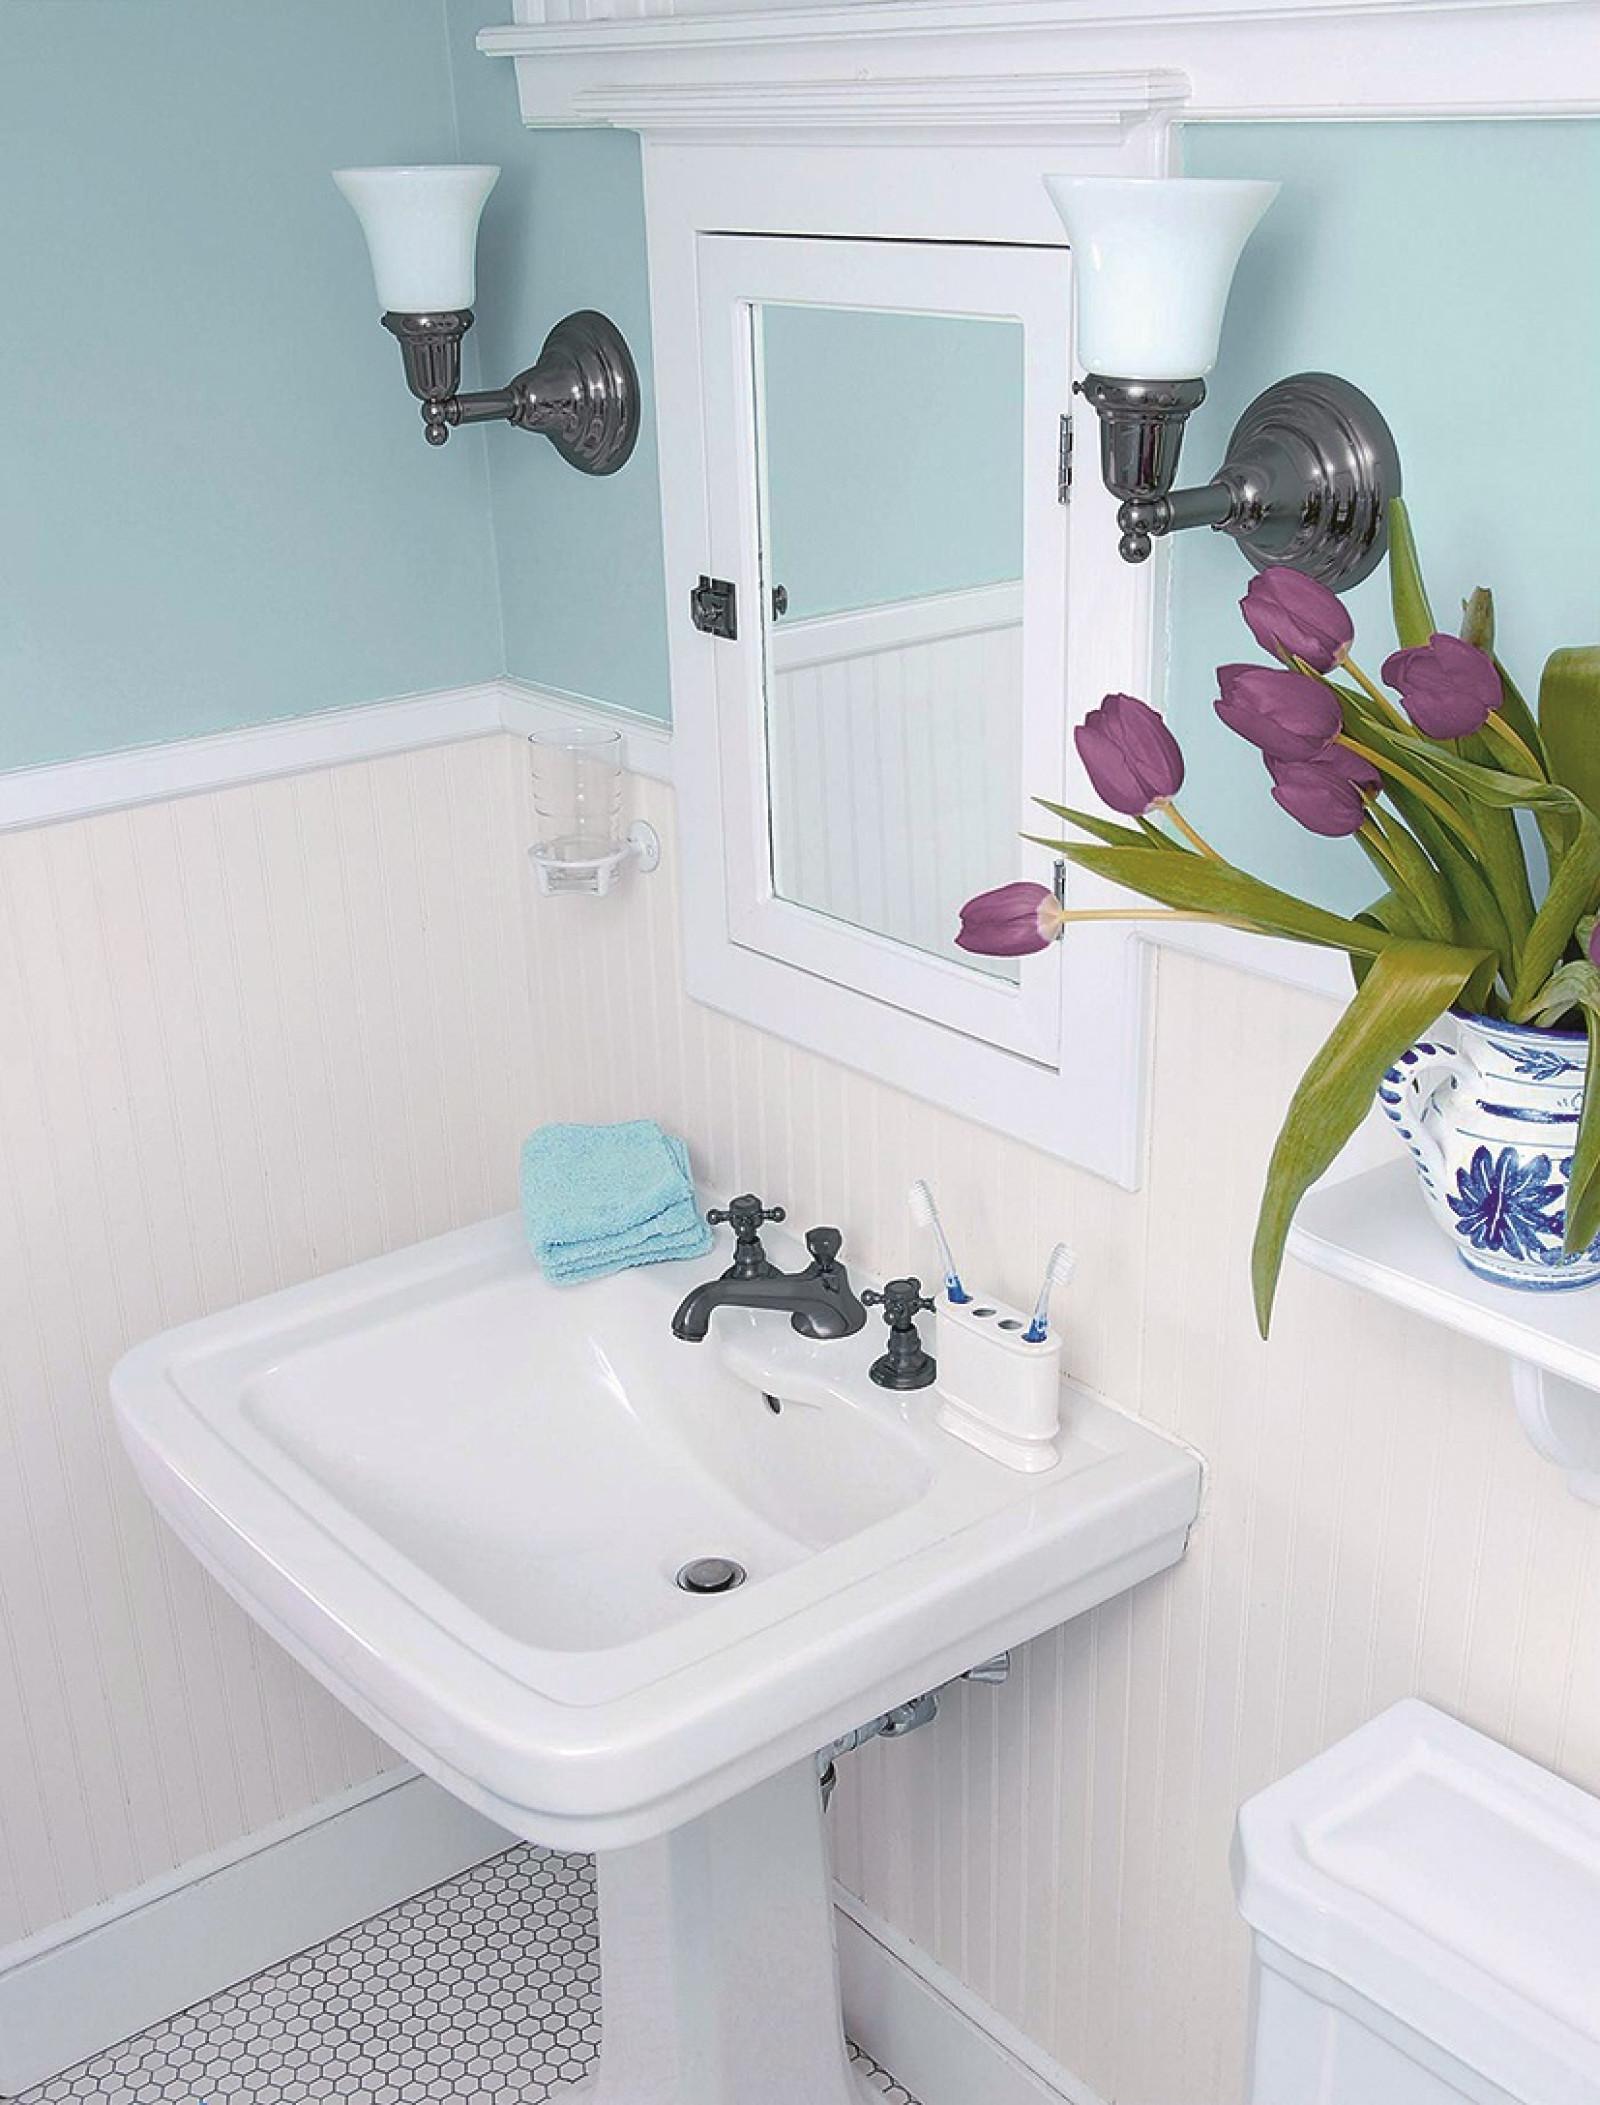 Покраска ванной комнаты водоэмульсионной краской